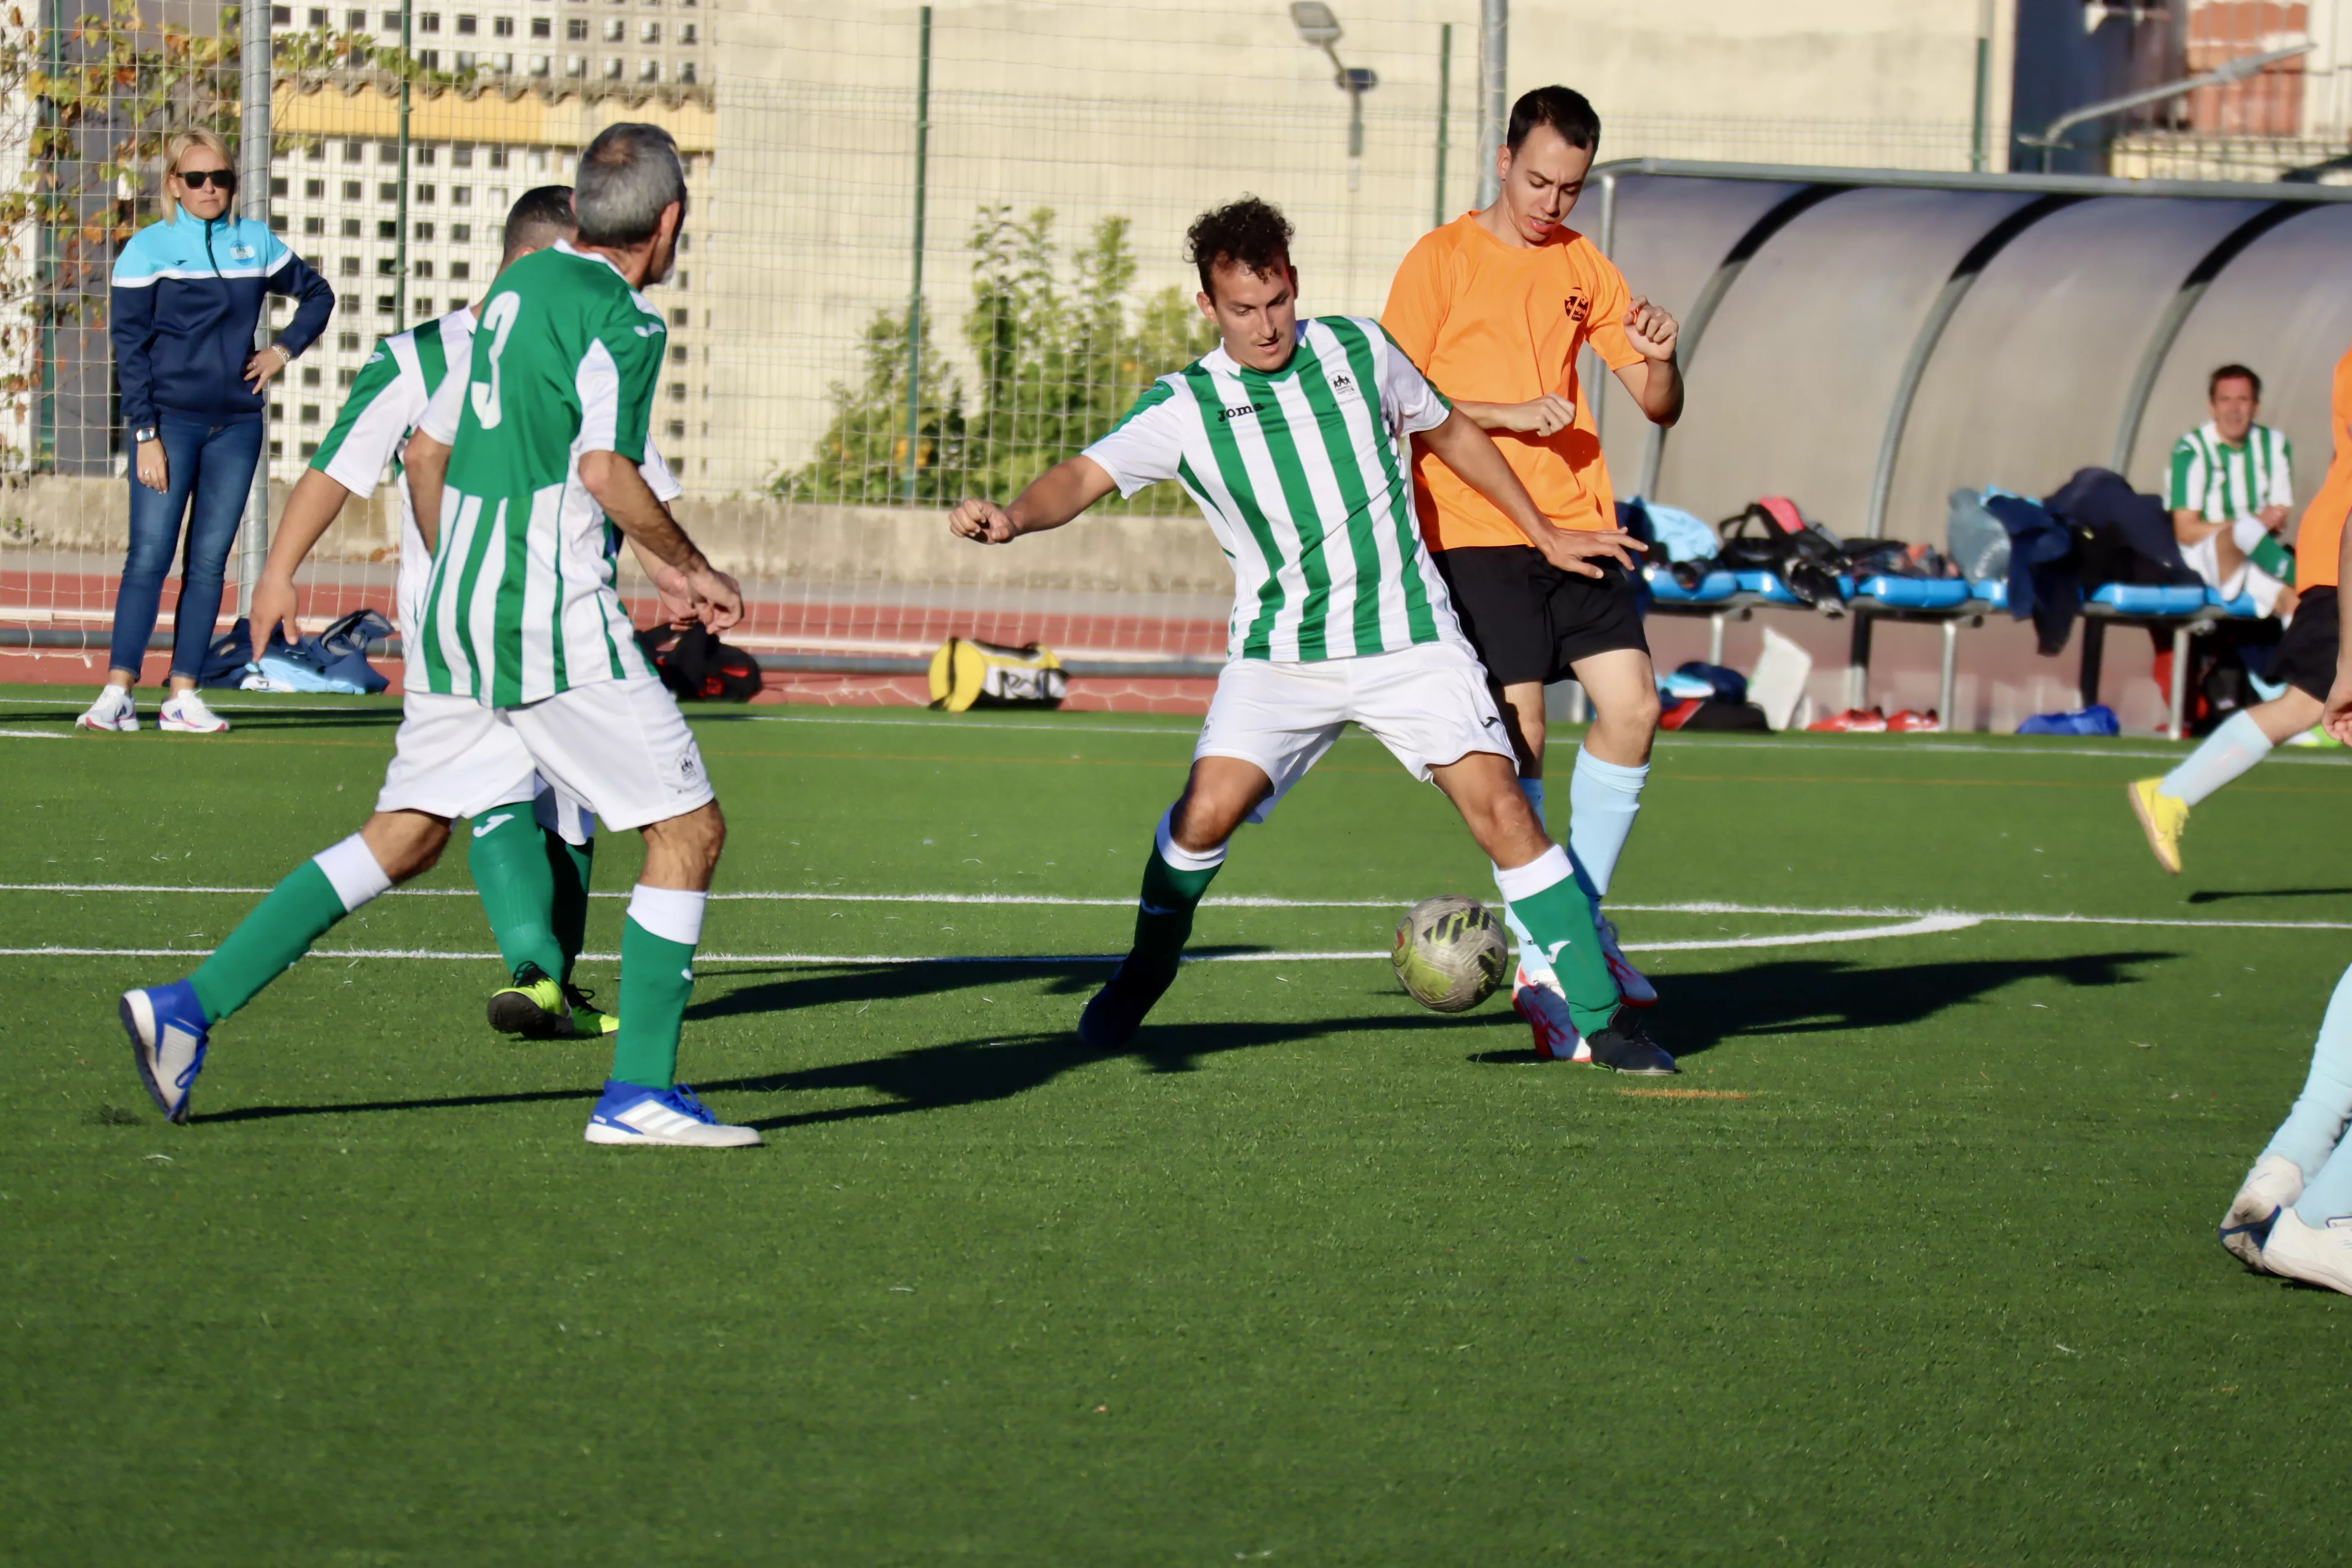 Campeonato Andaluz de Fútbol 7 FANDDI en Lucena